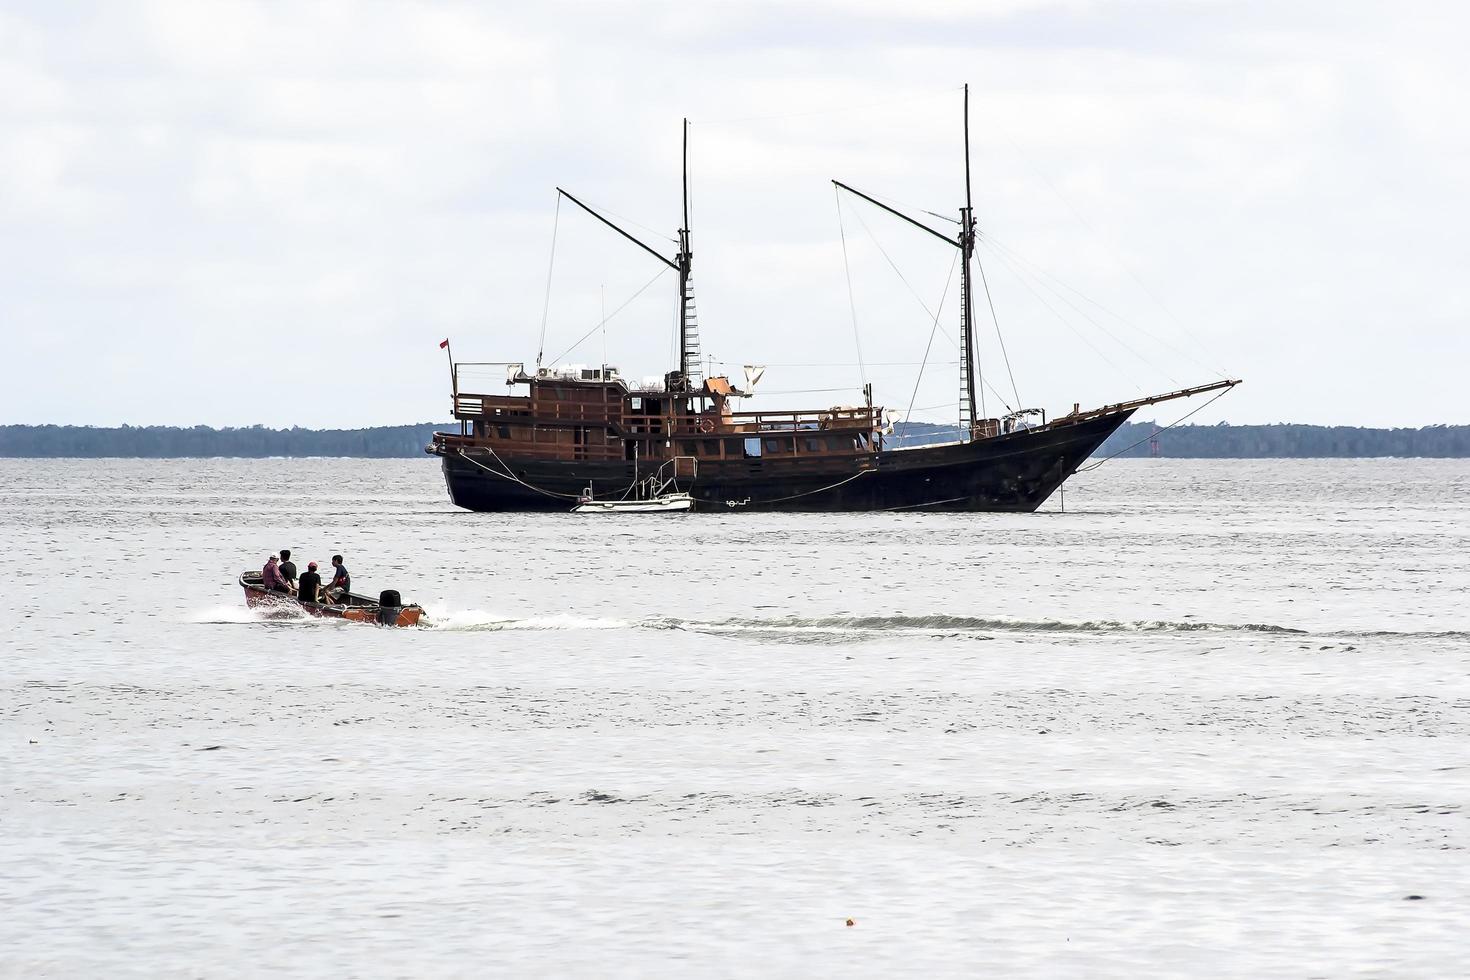 sorong, indonésie 2021- un bateau de pêche traditionnel photo